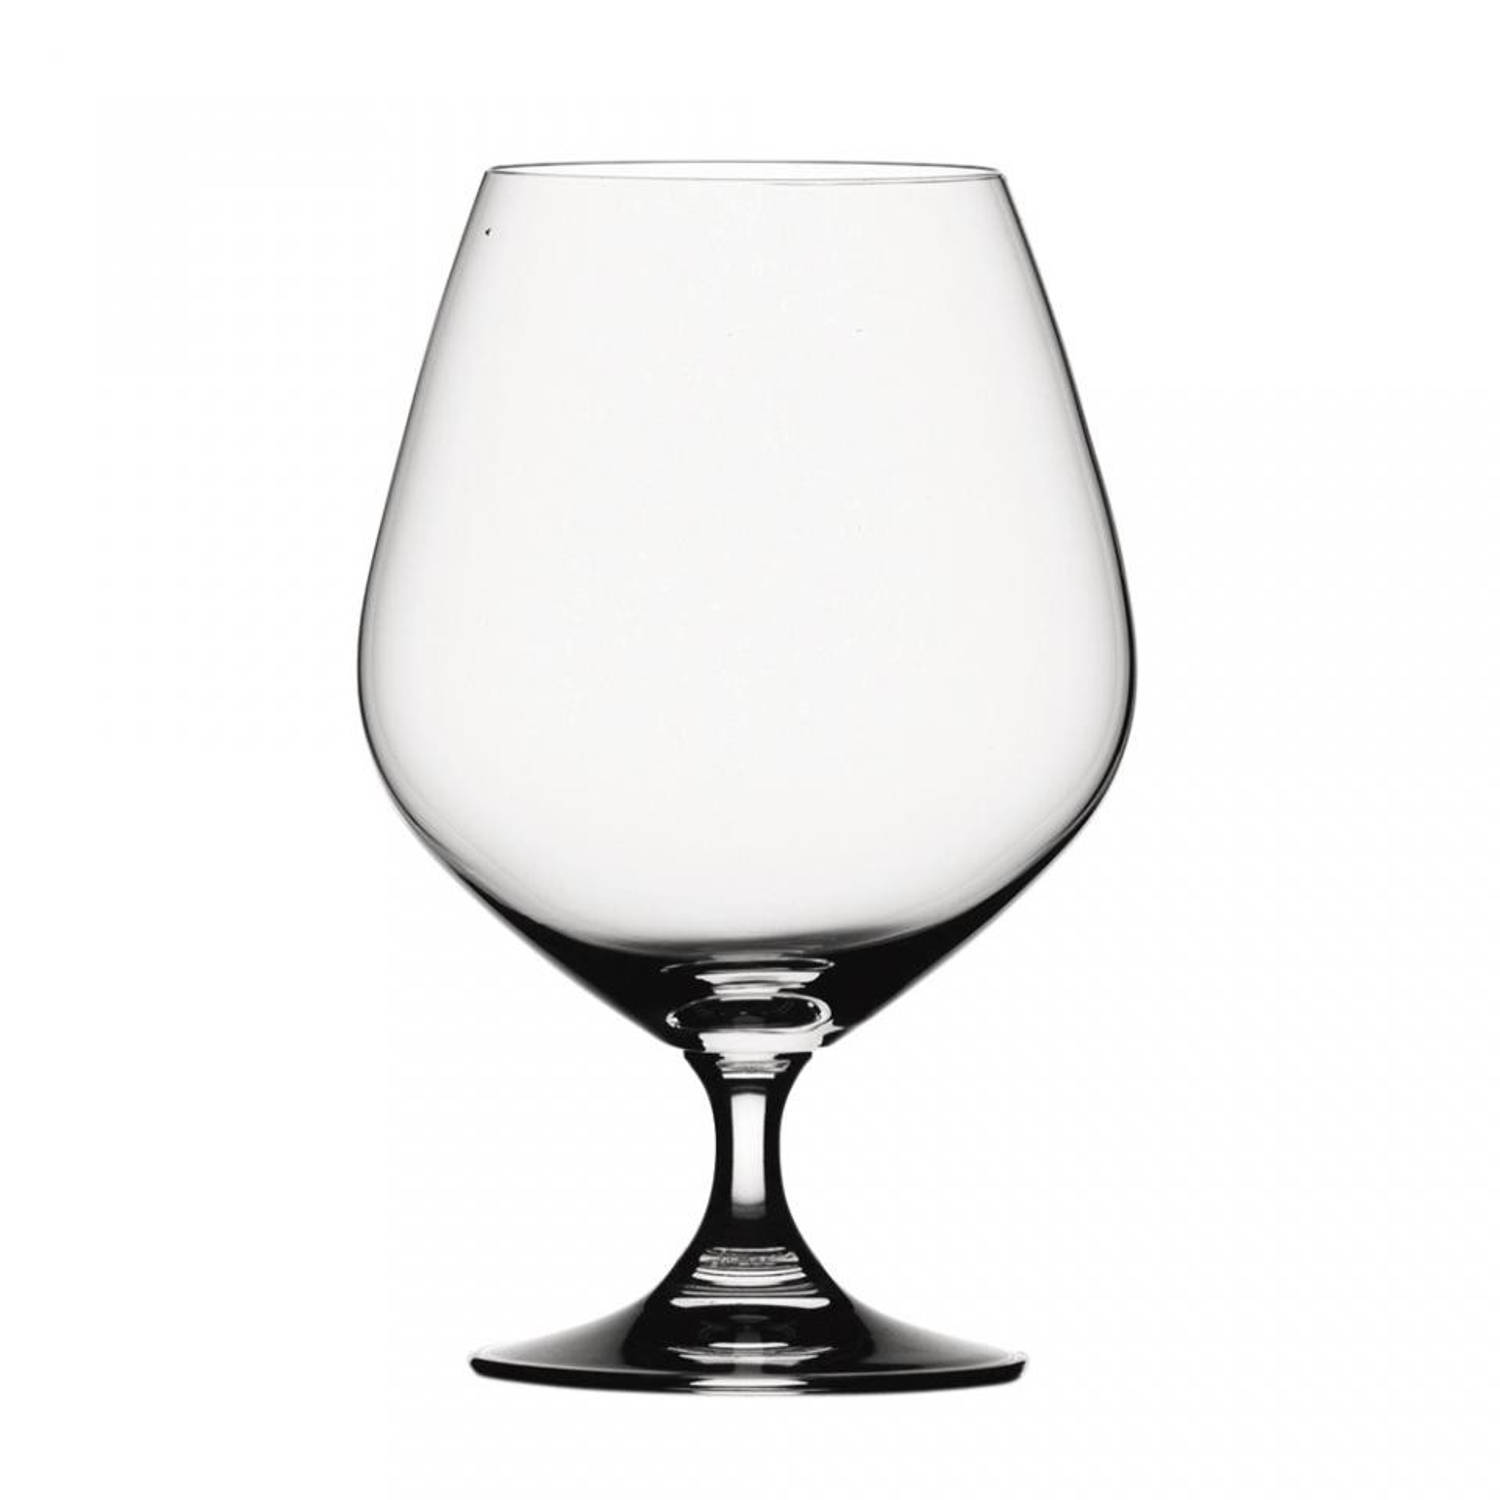 Spiegelau brandy glas - 55,8 cl - set van 4